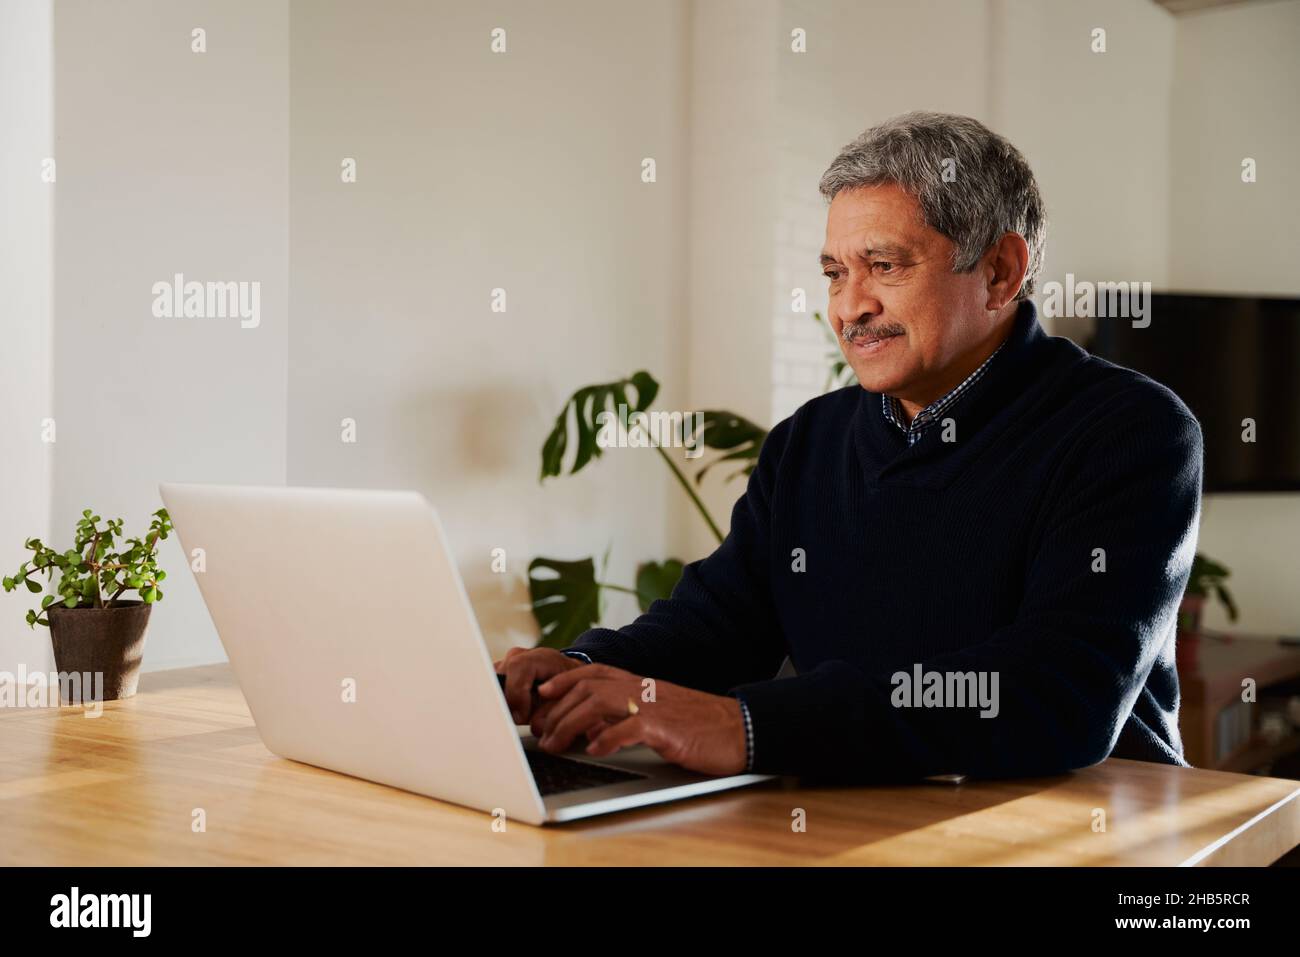 Multikulturelle ältere Männer, die E-Mails schreiben, während sie einen Laptop benutzen. Isoliert in einem modernen Zuhause, sitzend an der Küchentheke. Stockfoto